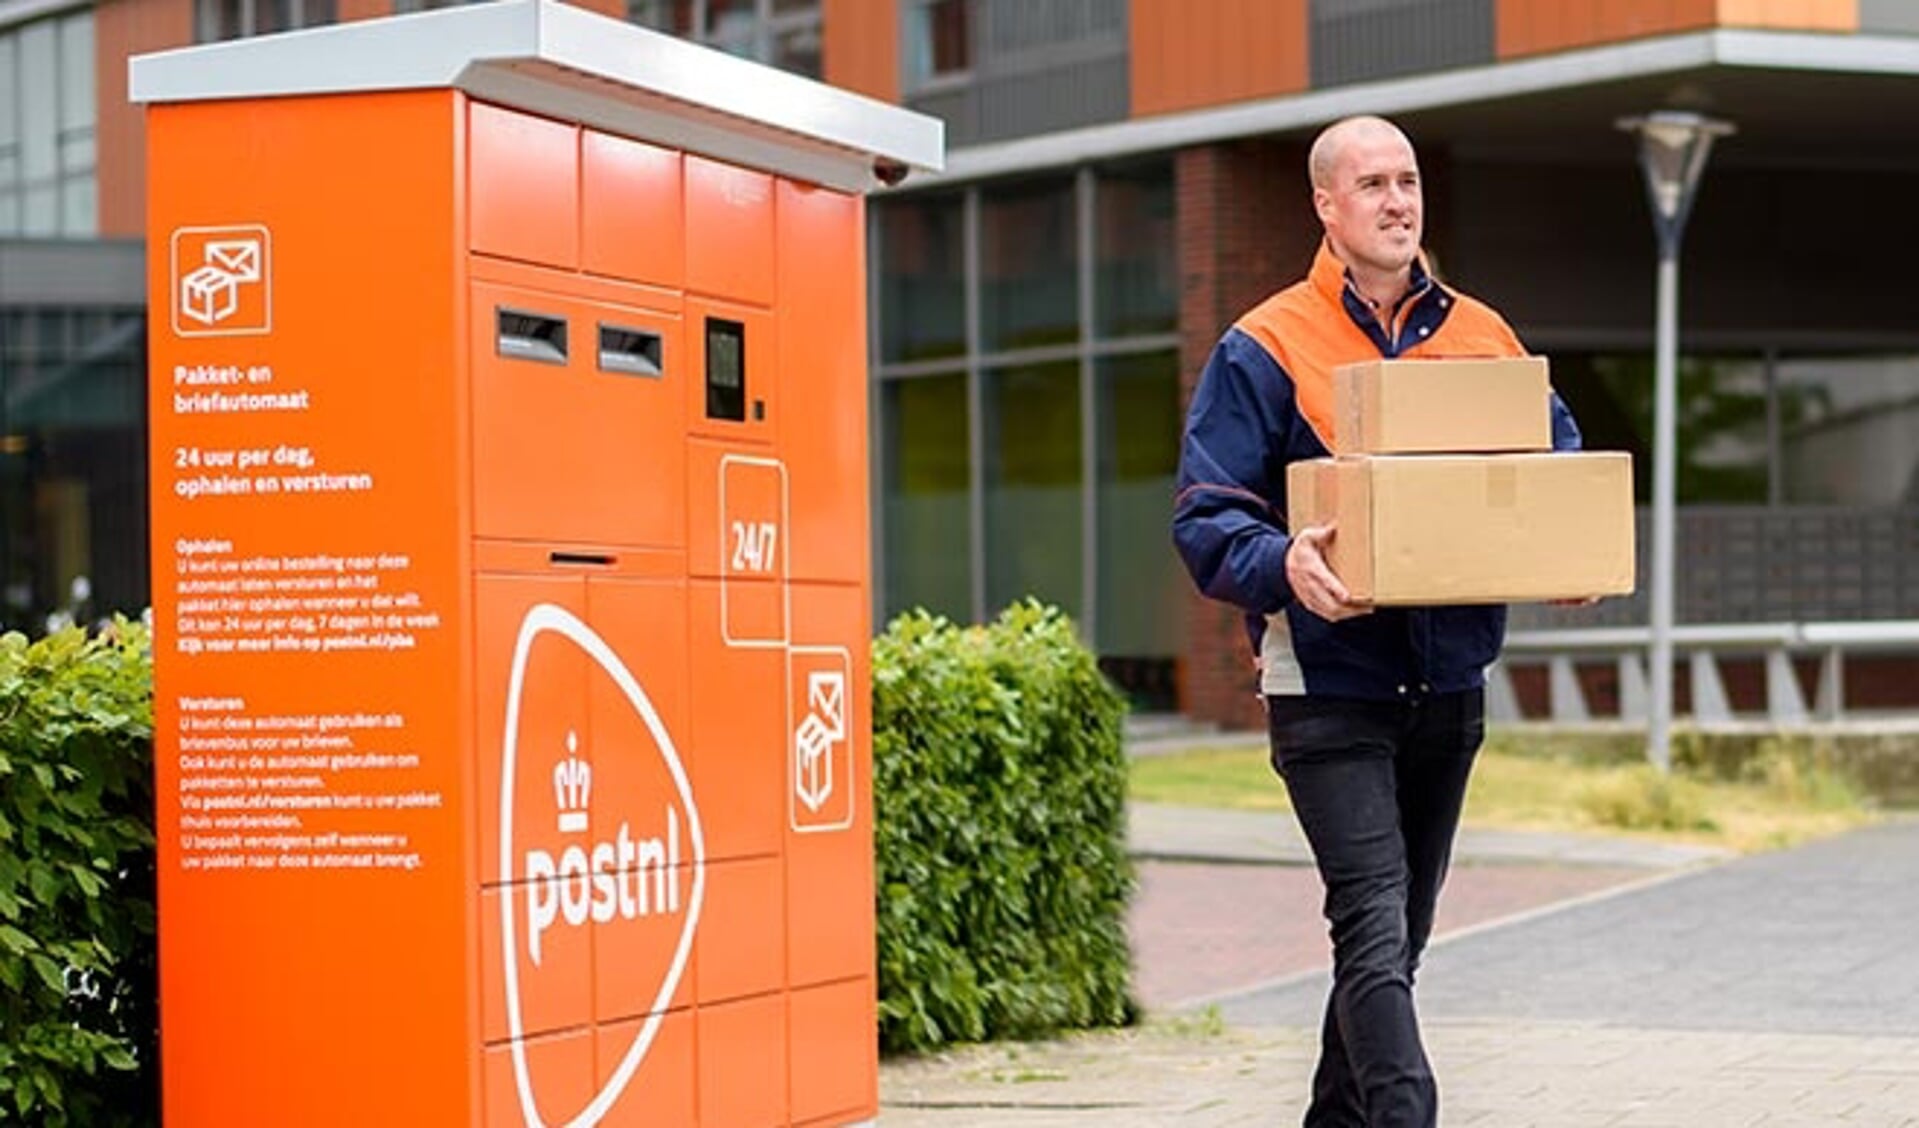 Heiligdom Mangel rijkdom PostNL pakket- en briefautomaat in Heerhugowaard | Al het nieuws uit Dijk  en Waard